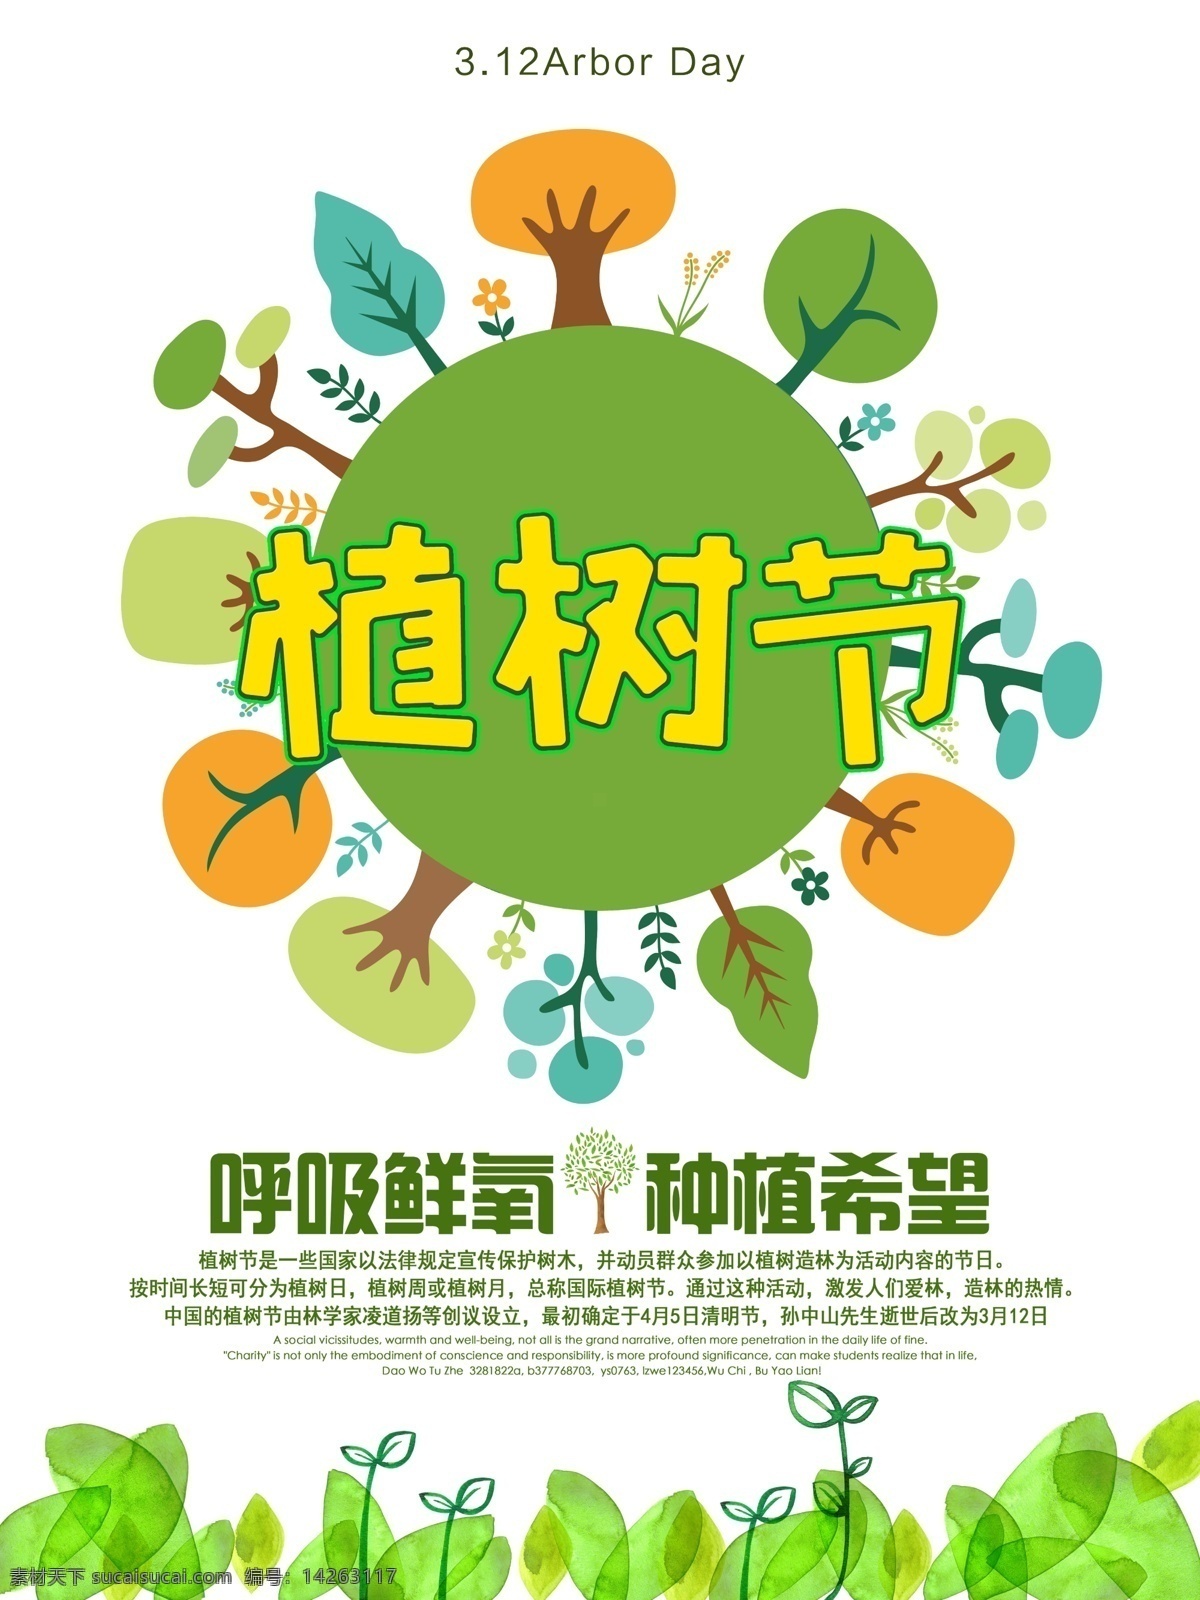 植树节 插画风格 海报 插画风格海报 适用于植树节